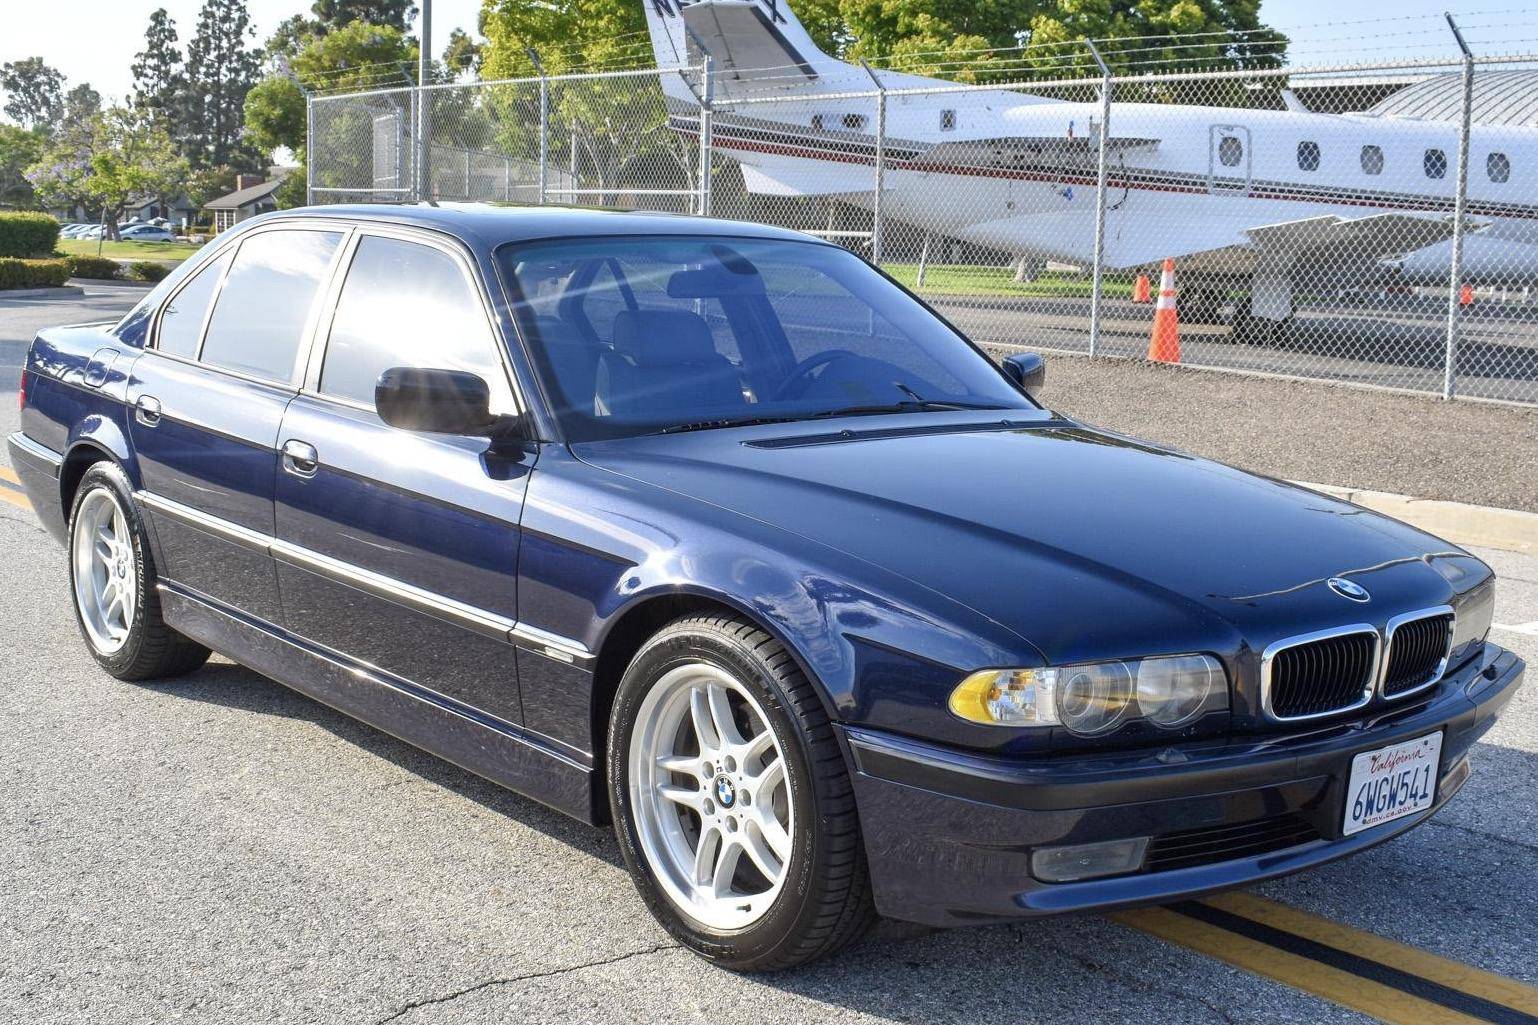 Today I reviewed the best sedan ever made - 2001 BMW E38 740i 